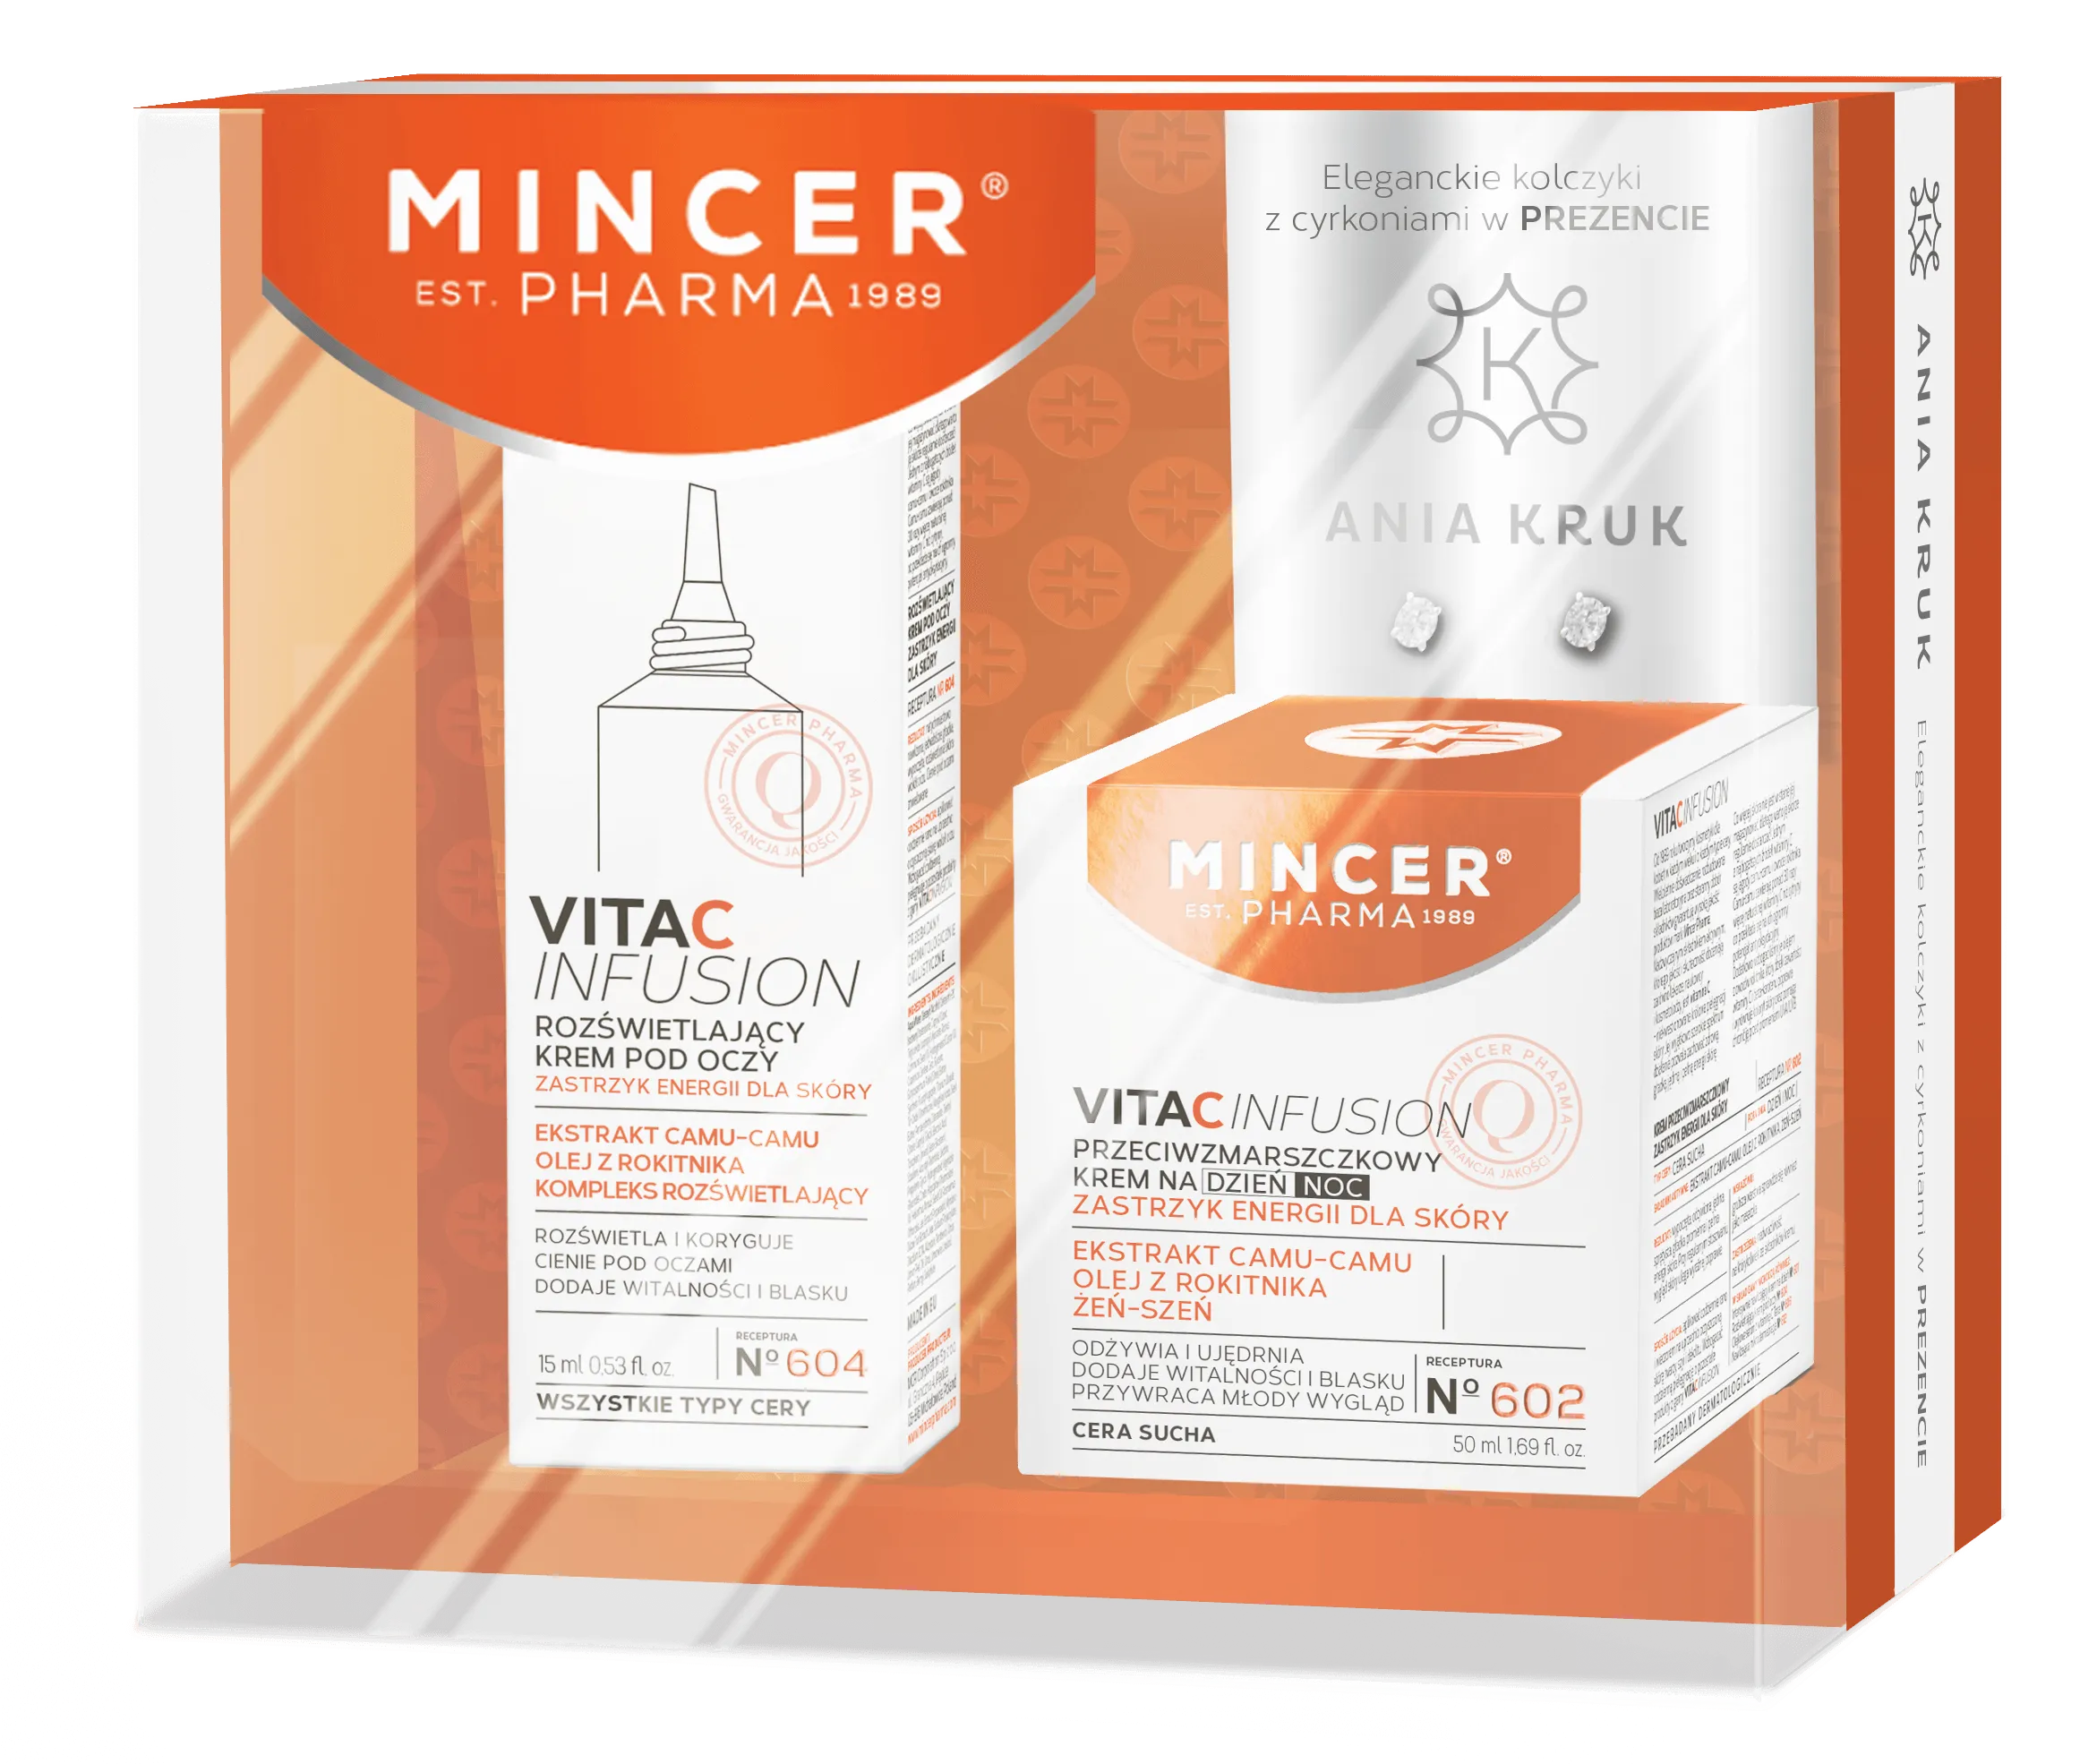 Mincer Pharma zestaw Vita C Fusion, przeciwzmarszczkowy krem na dzień i na noc nr 602, 50ml + rozświetlający krem pod oczy nr 604, 15 ml + kolczyki